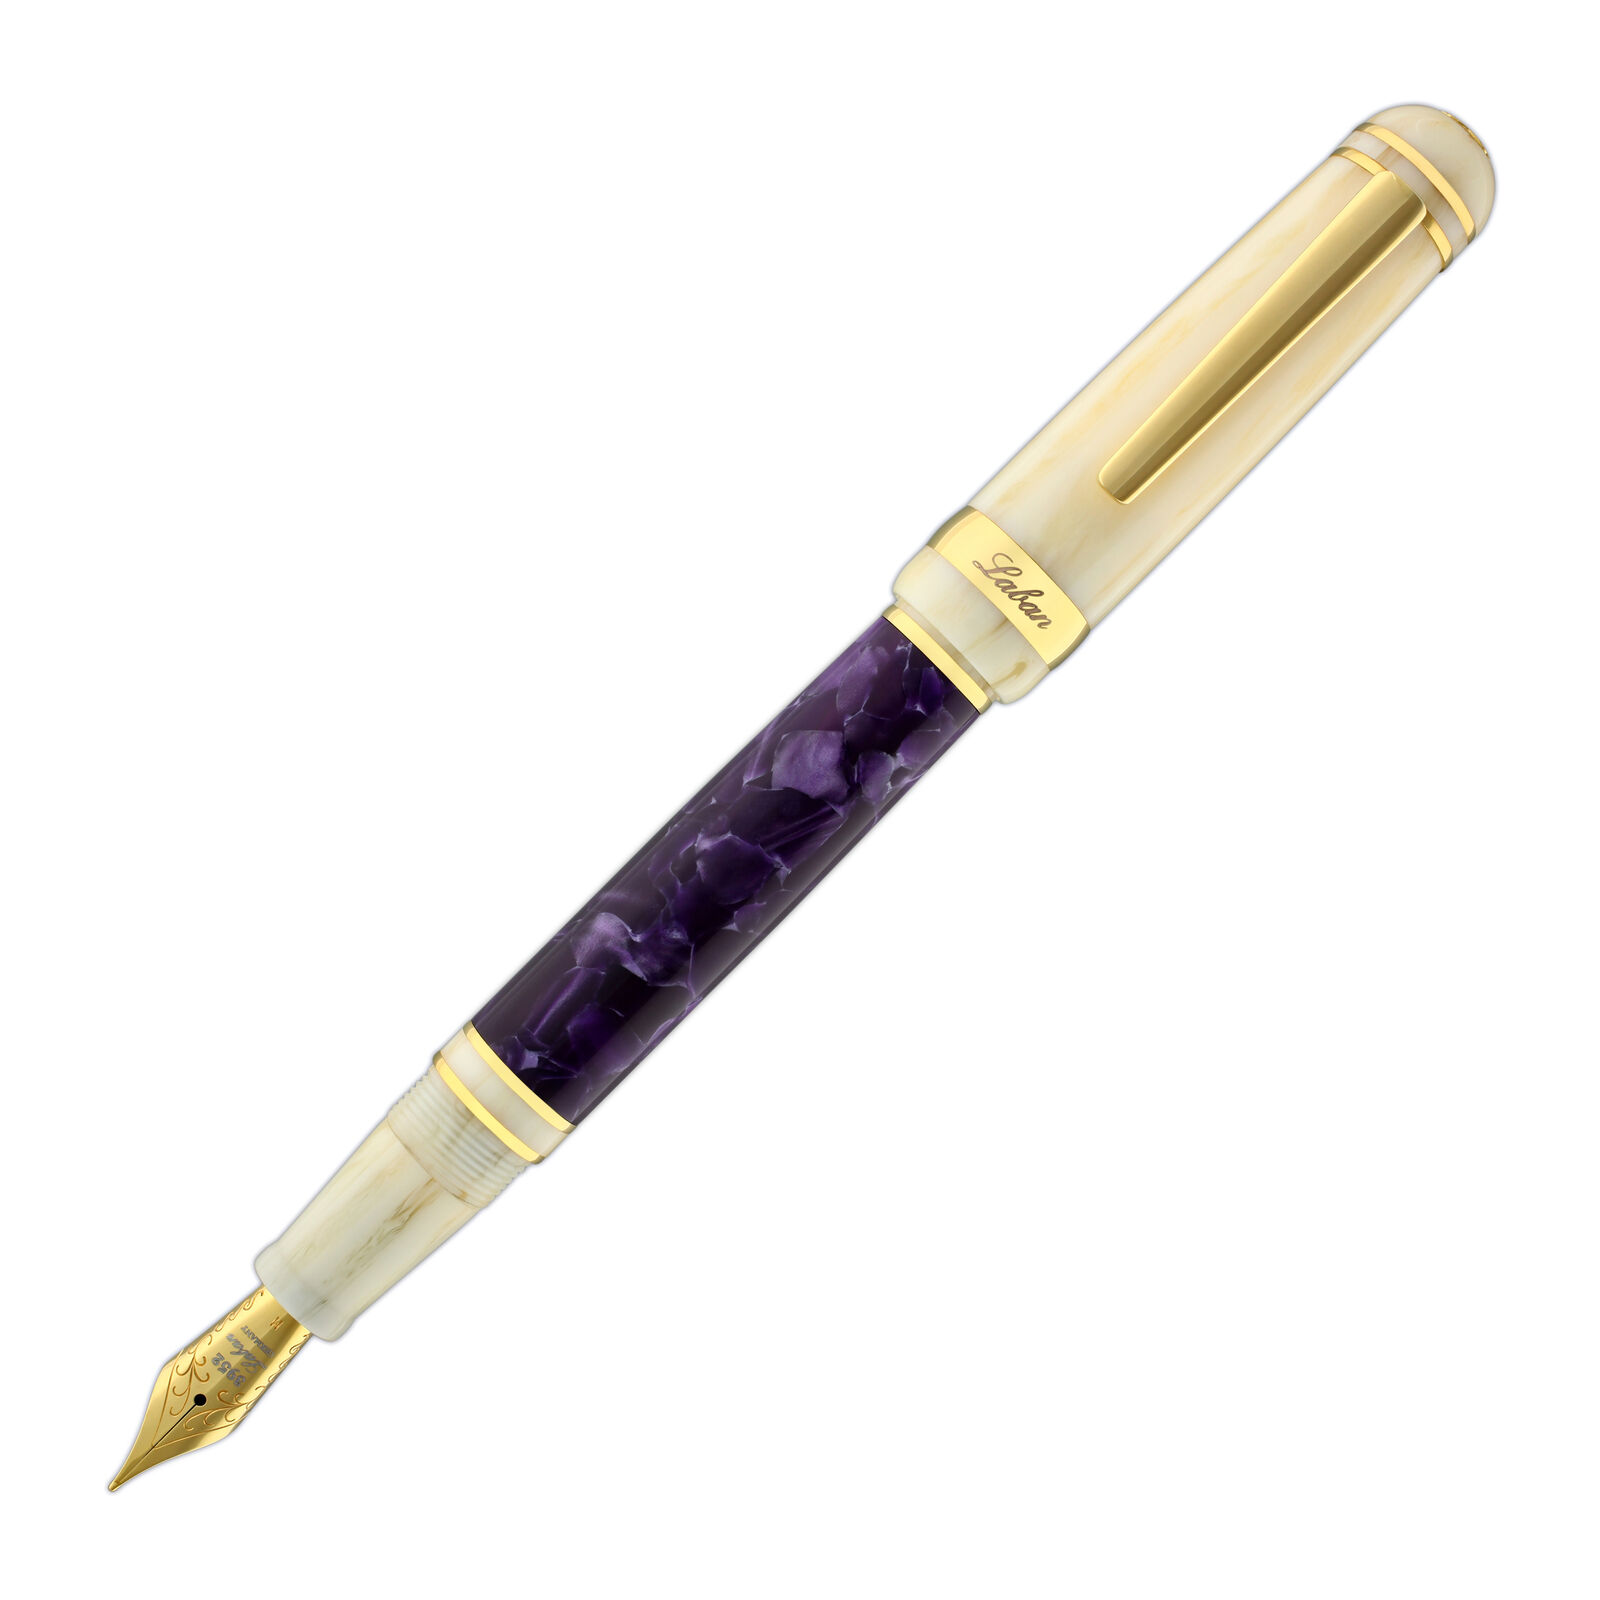 Laban 325 Fountain Pen in Wisteria Purple - Fine Point - NEW in Original Box